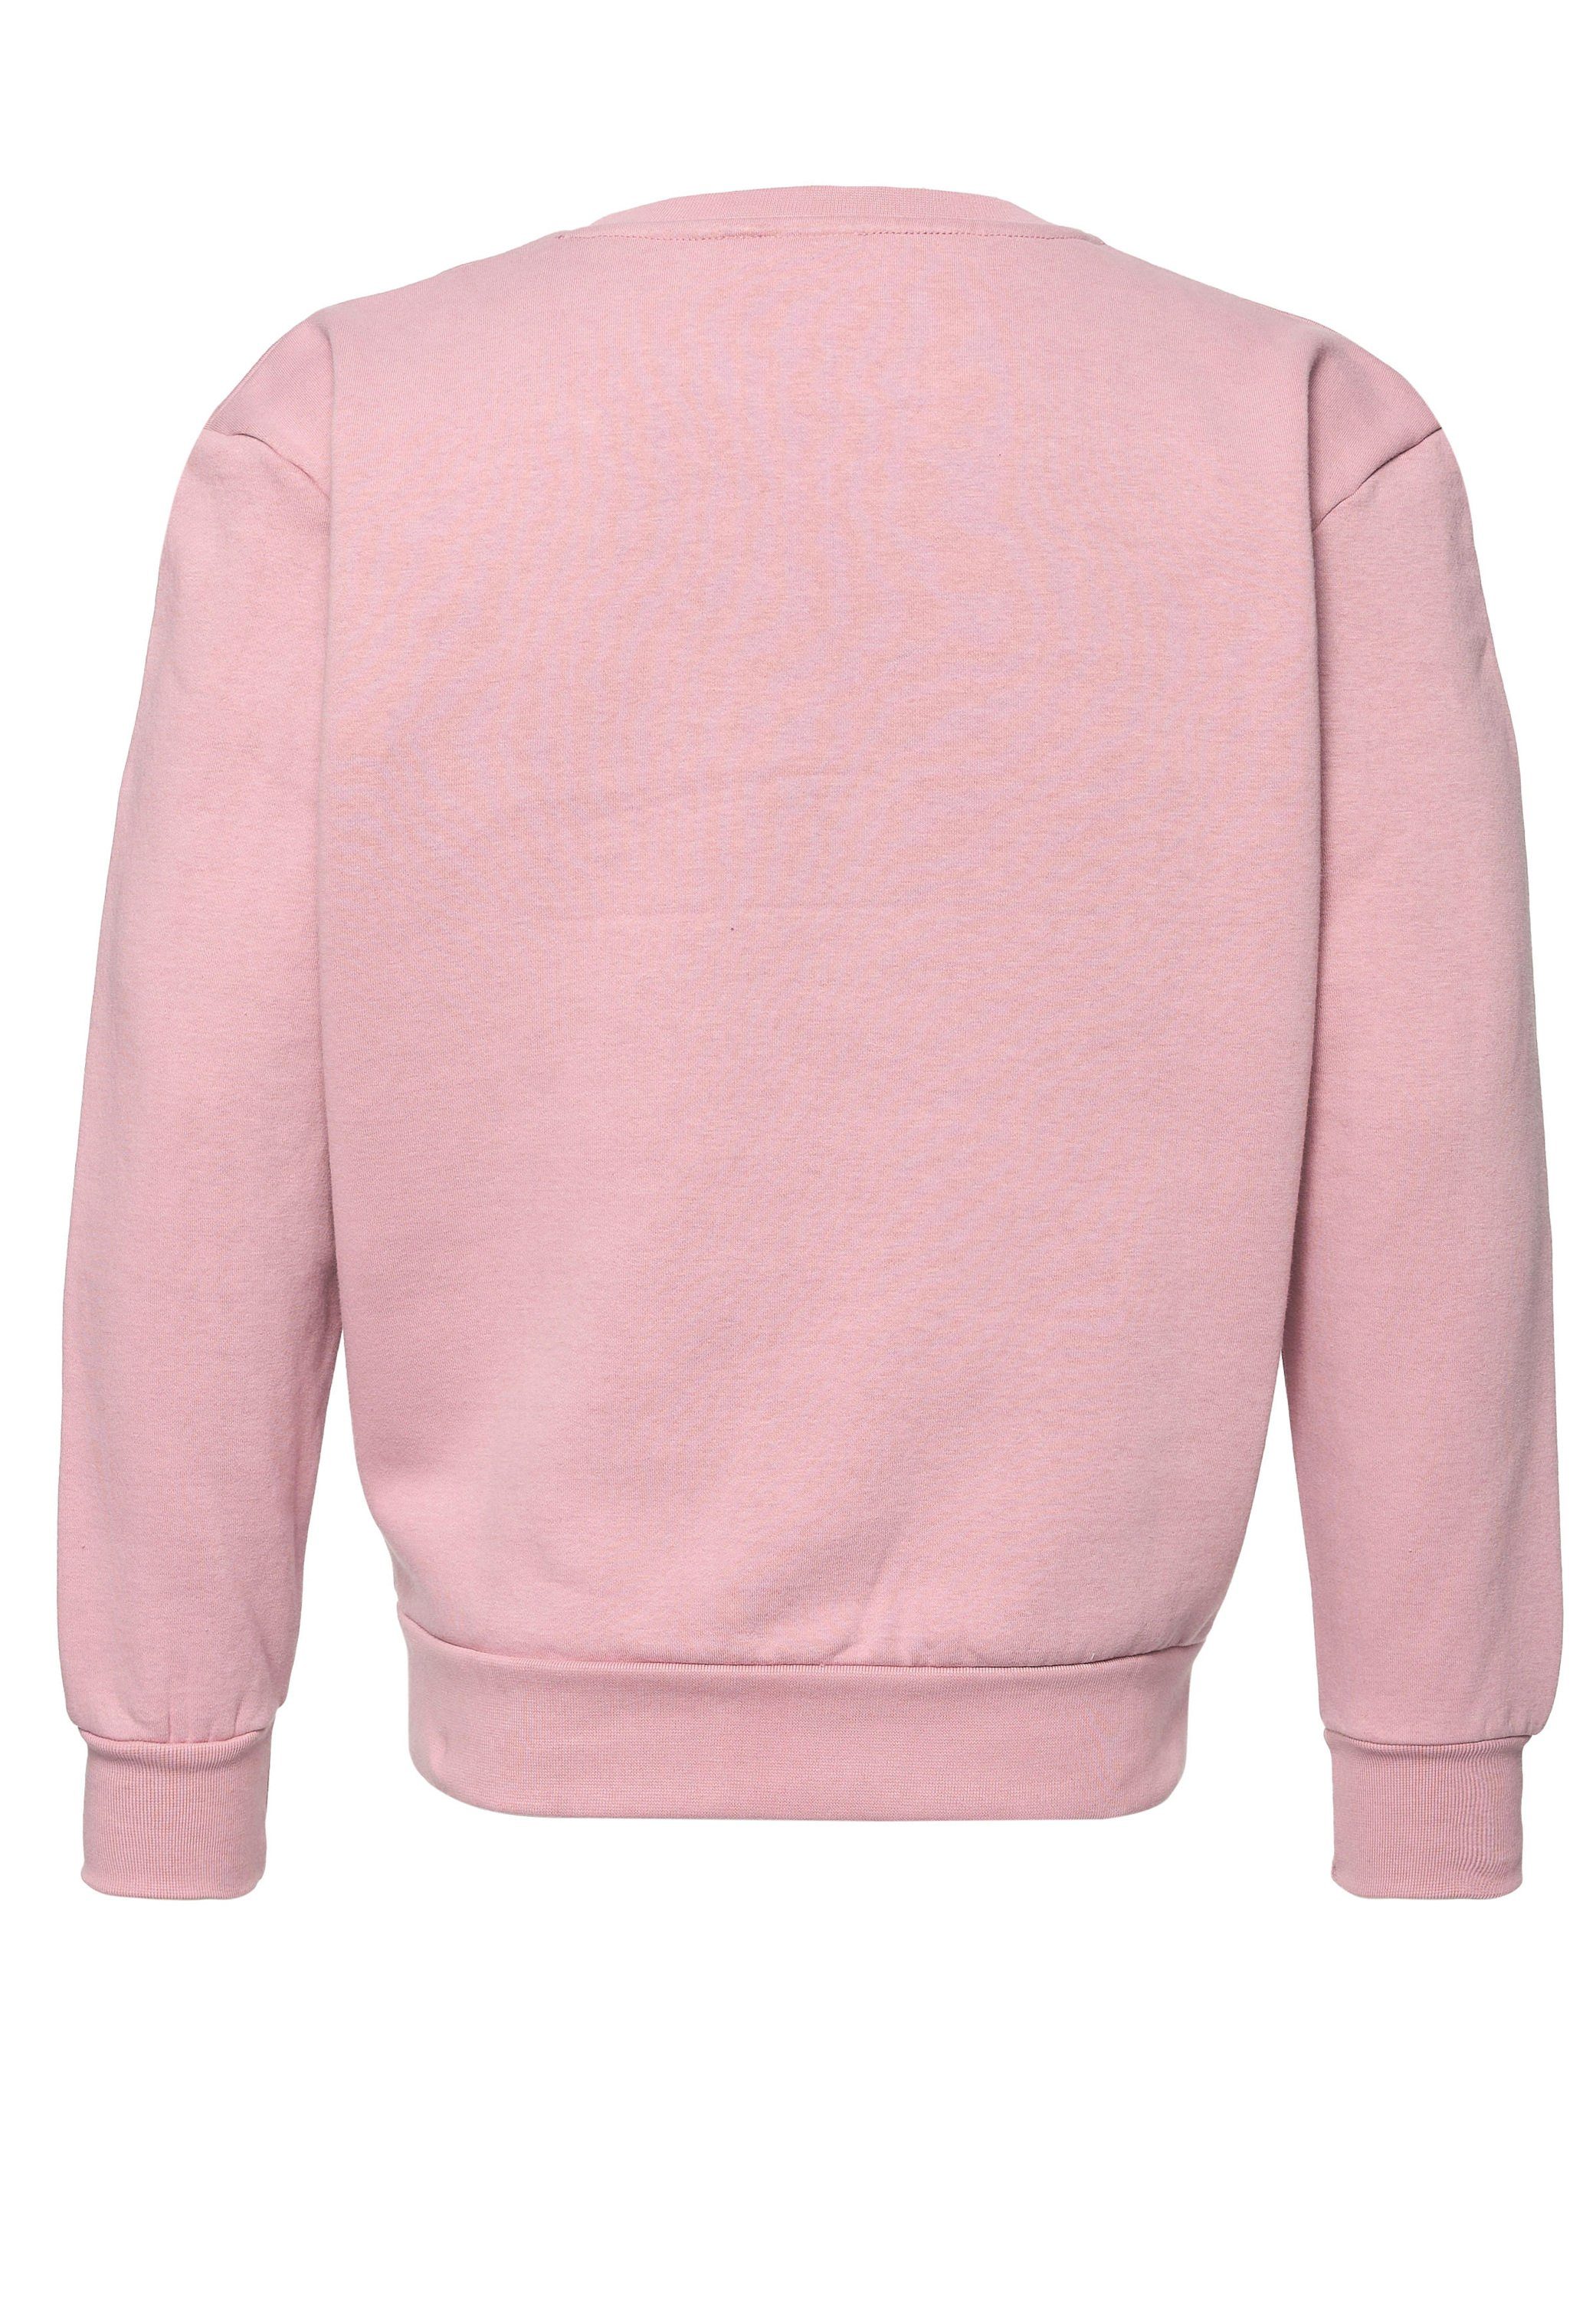 MIKON Sweatshirt Pink Bio-Baumwolle GOTS zertifizierte Donut